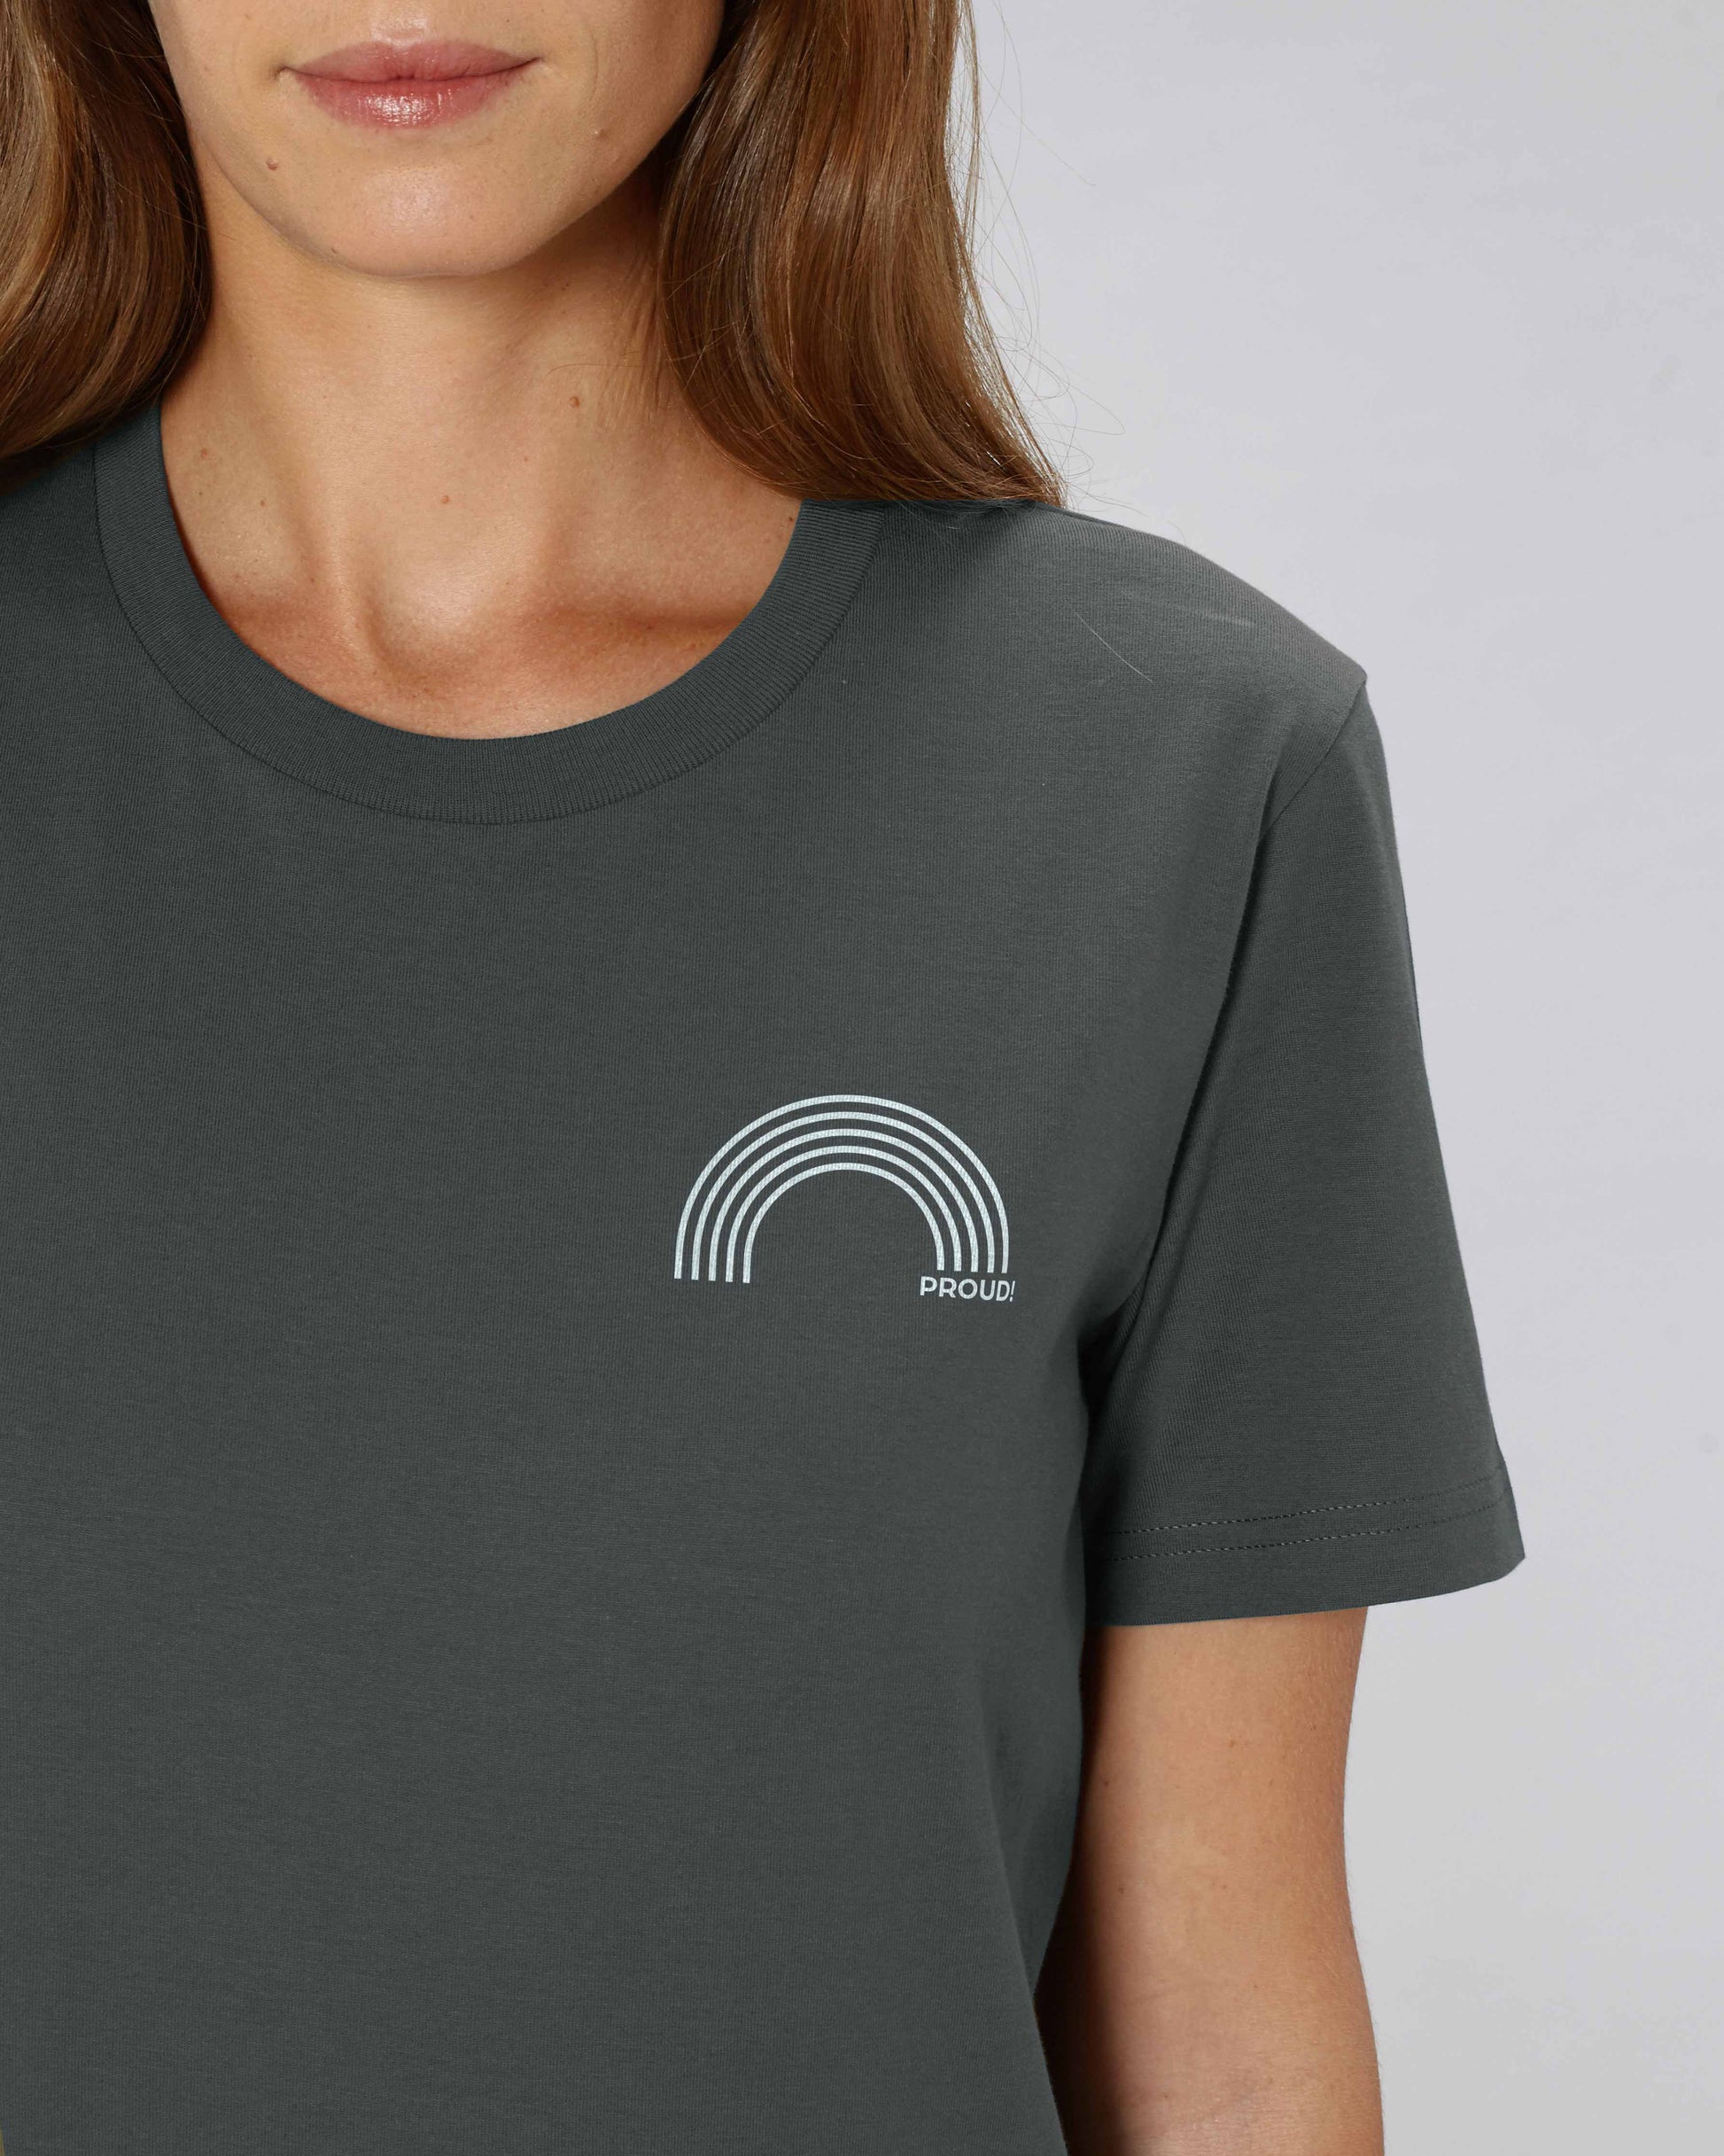 EINHORST® unisex Organic Shirt in "Anthracite" mit dem Motiv "proud Regenbogen" in der Kombination weißer Regenbogen mit weißer Schrift, Bild von weiblicher Person mit Shirt